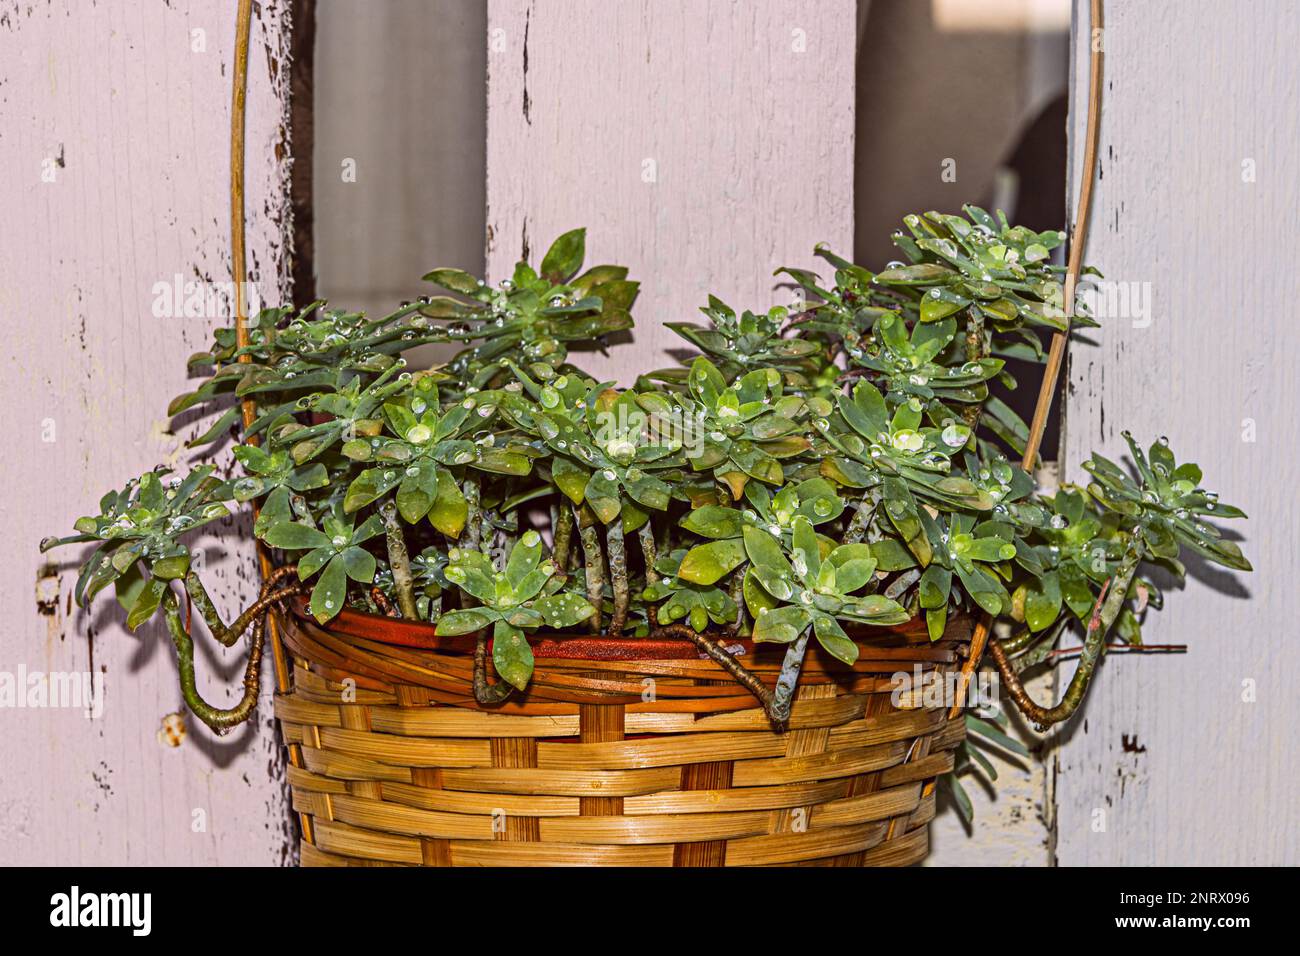 Une plante succulente avec de multiples tiges dépassant d'un panier en osier avec des gouttelettes d'eau sur les pétales et dans le fond de planches en bois Banque D'Images